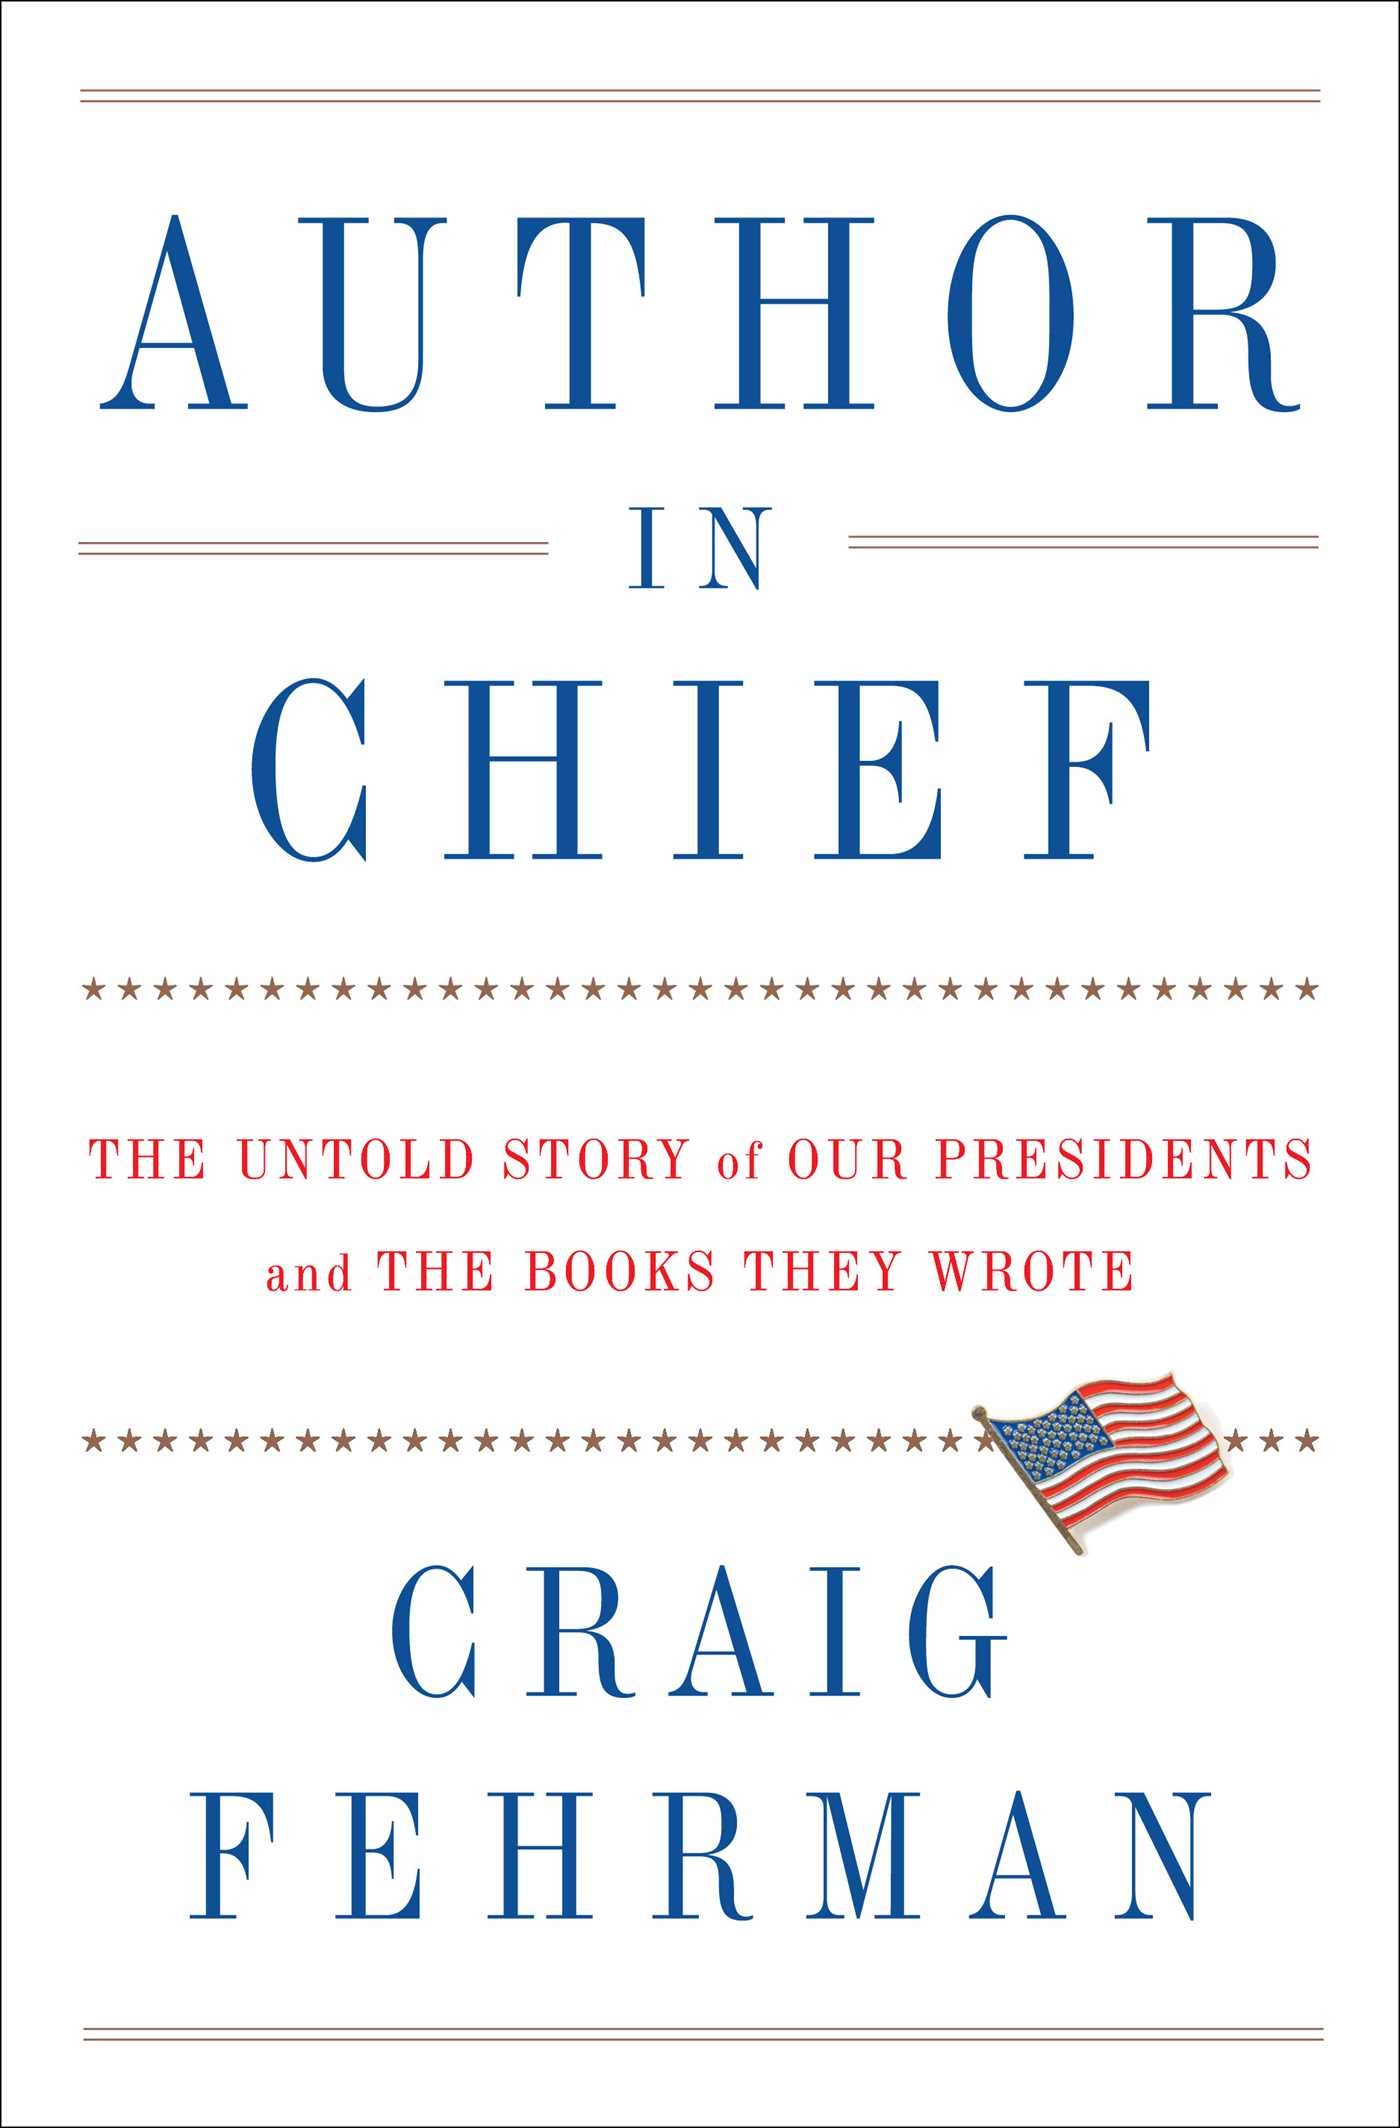 Author in Chief by Craig Fehrman